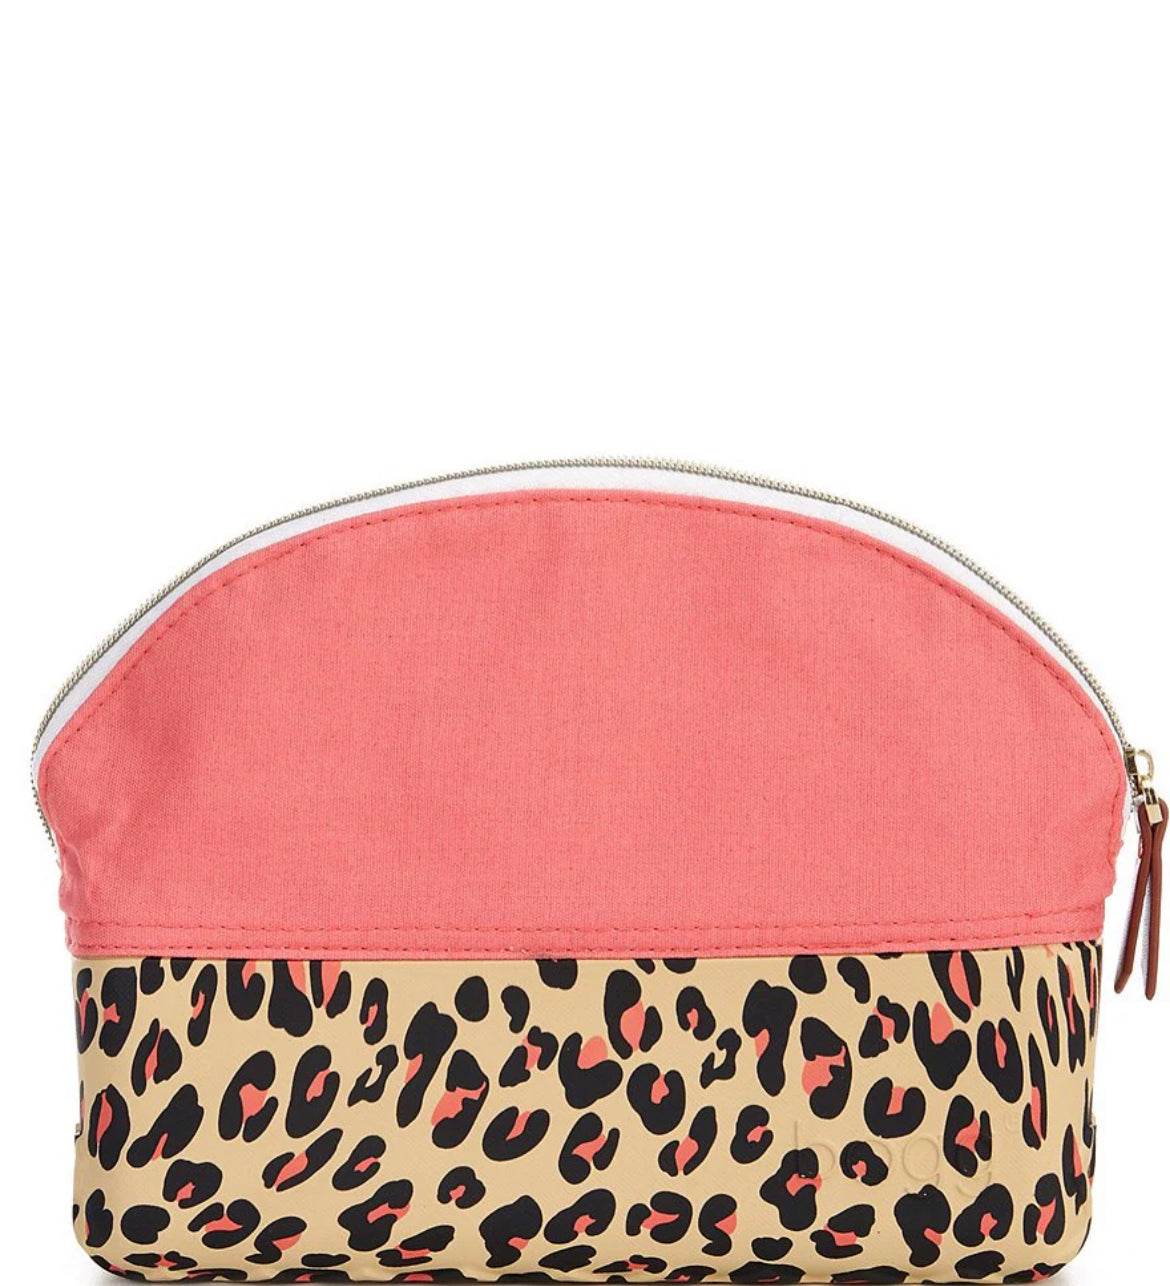 BOGG Beauty Bag (Coral/Cheetah)